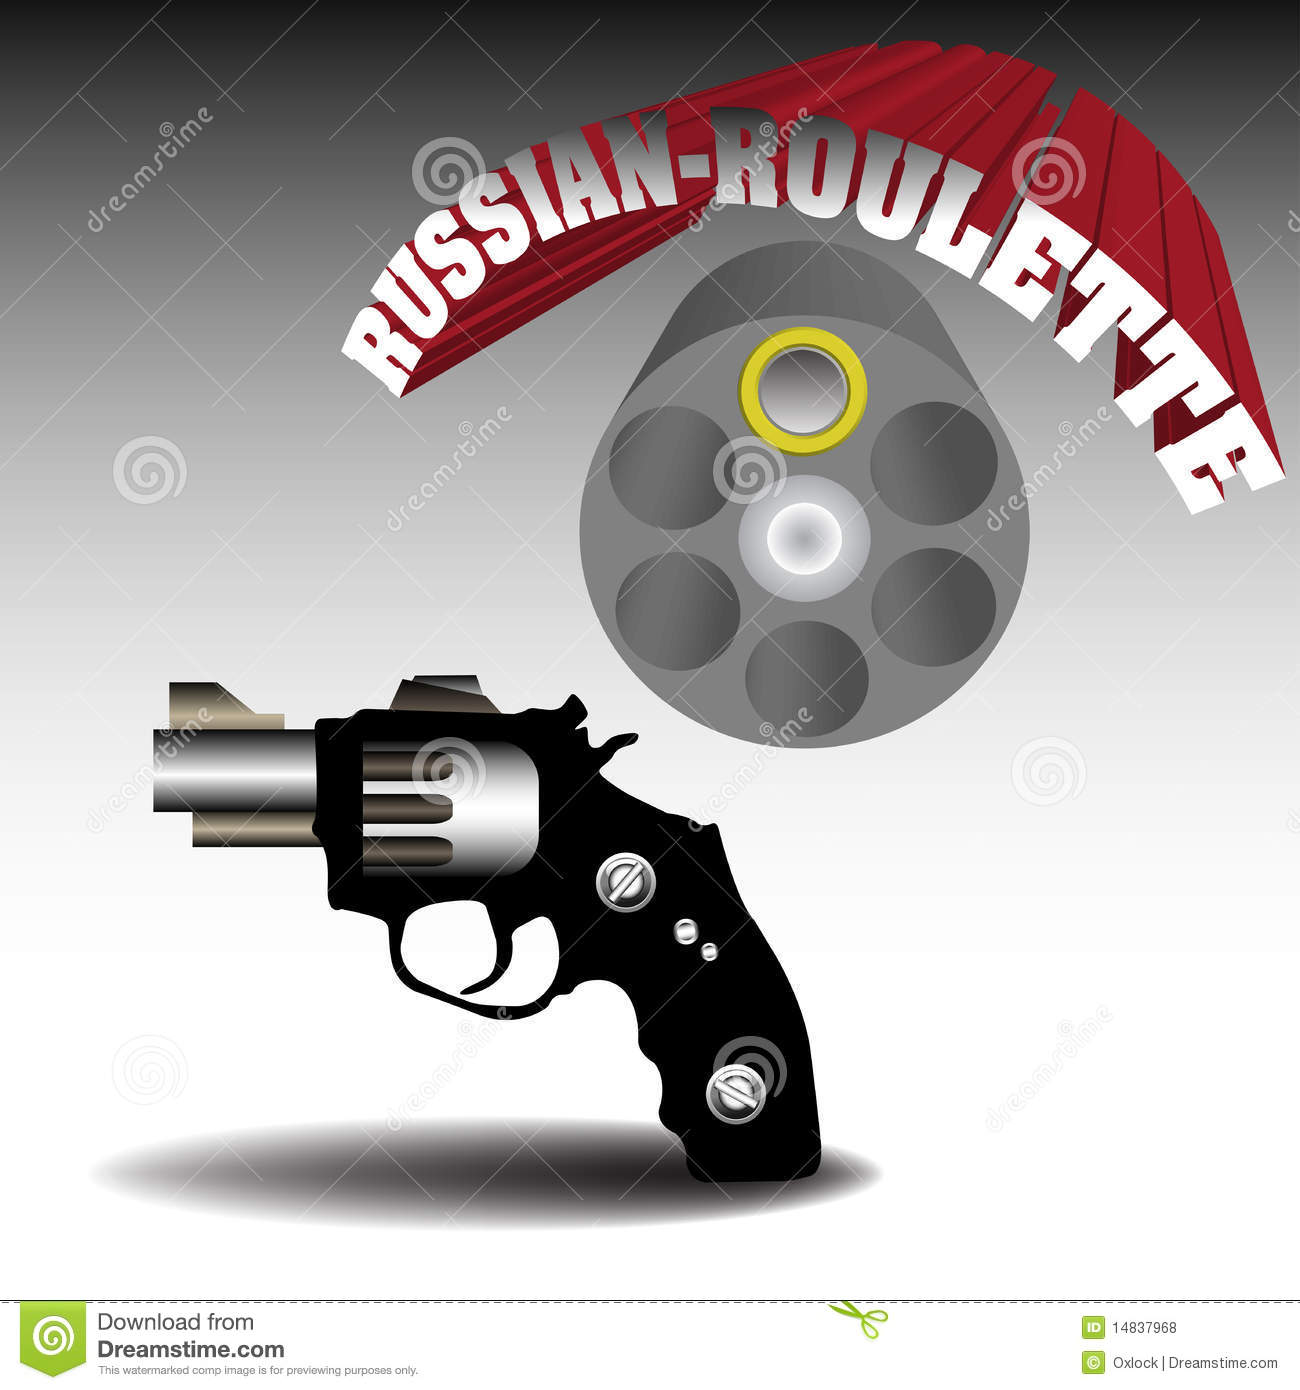 Russian Roulette App